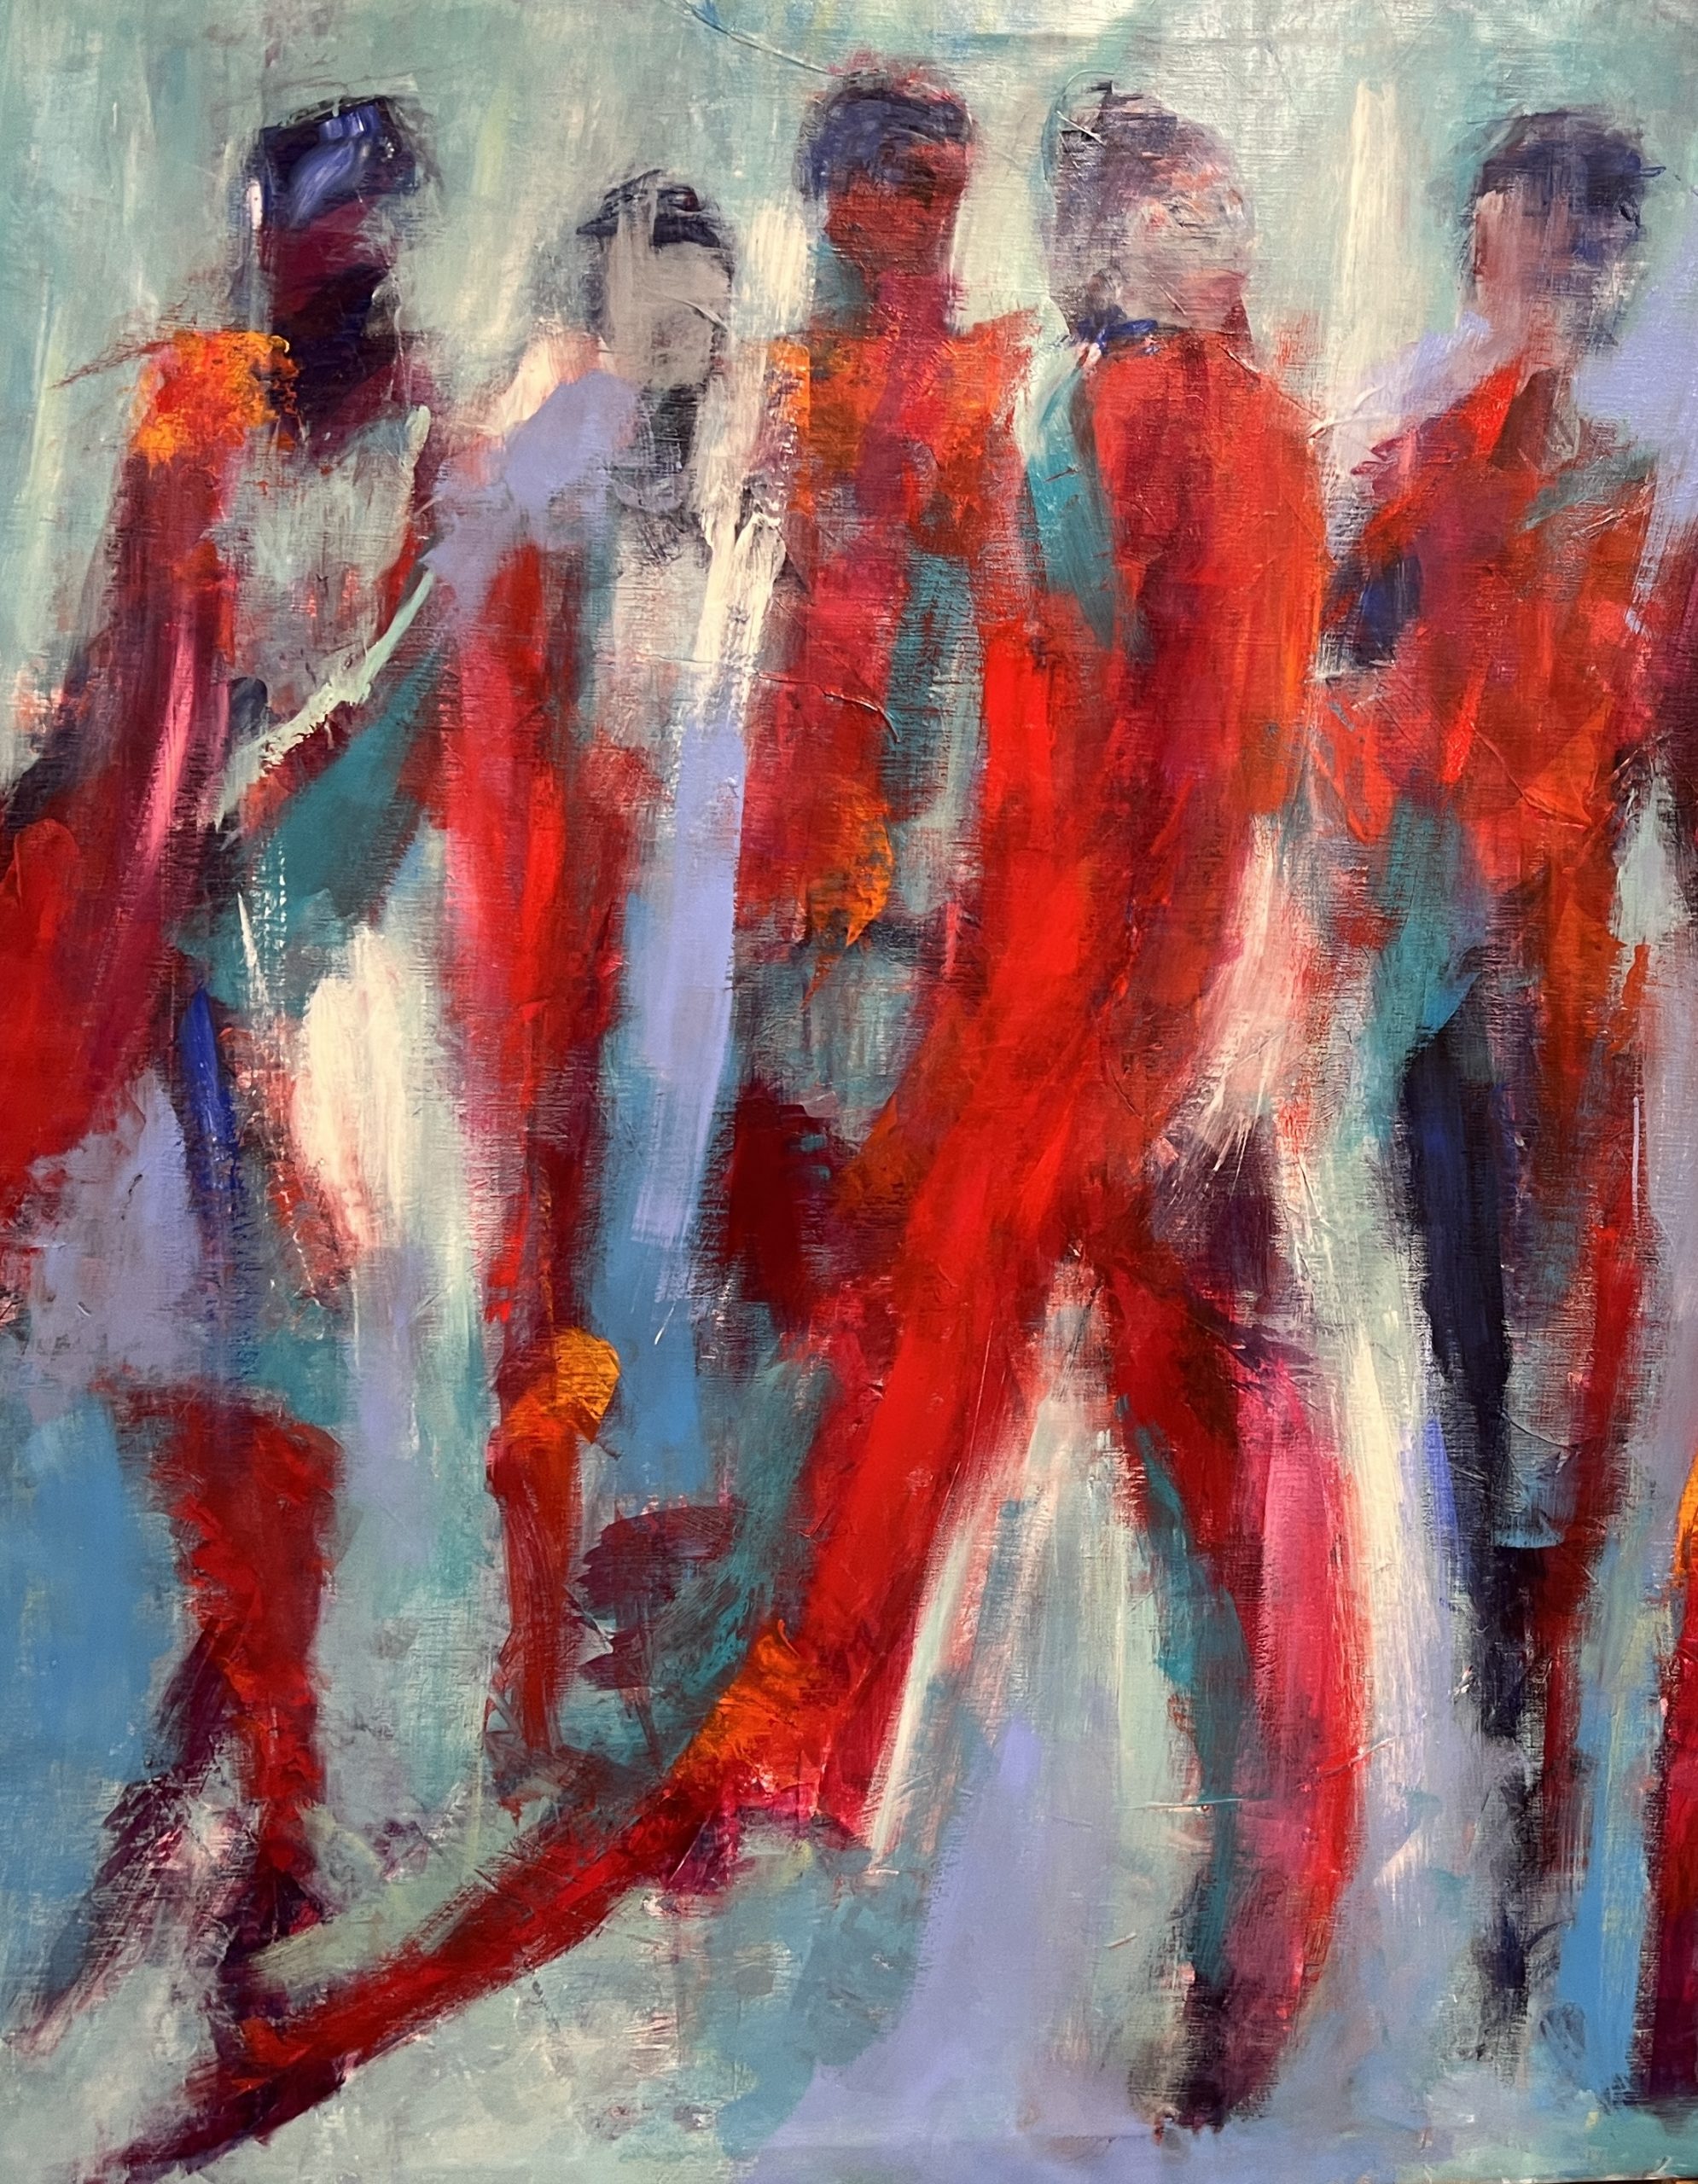 Mennesker på vej i dejligt flademaleri med masser af varme farver fra lyst blåt over lille til rødt og orange.